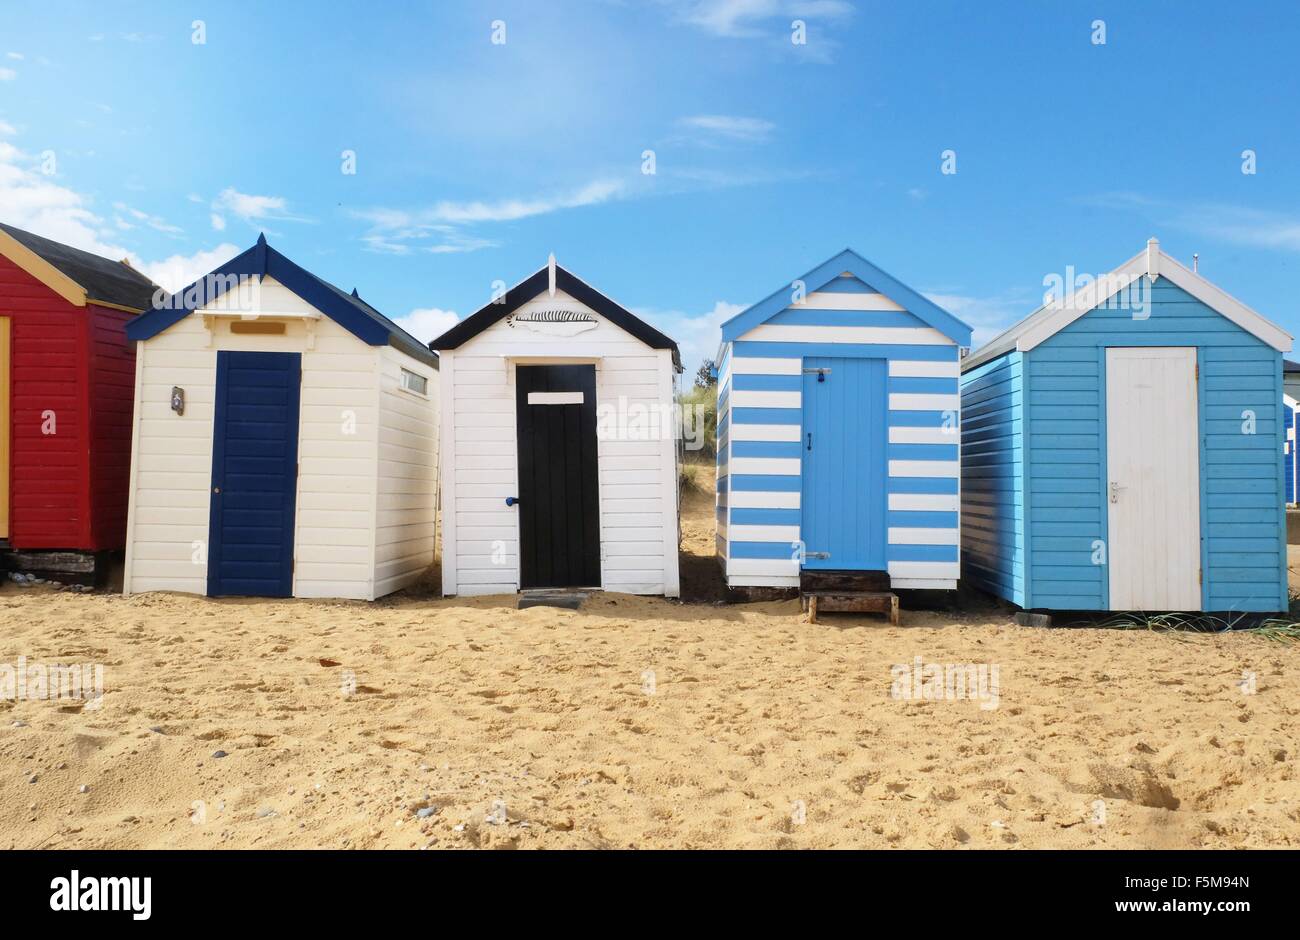 Row of beach huts Stock Photo